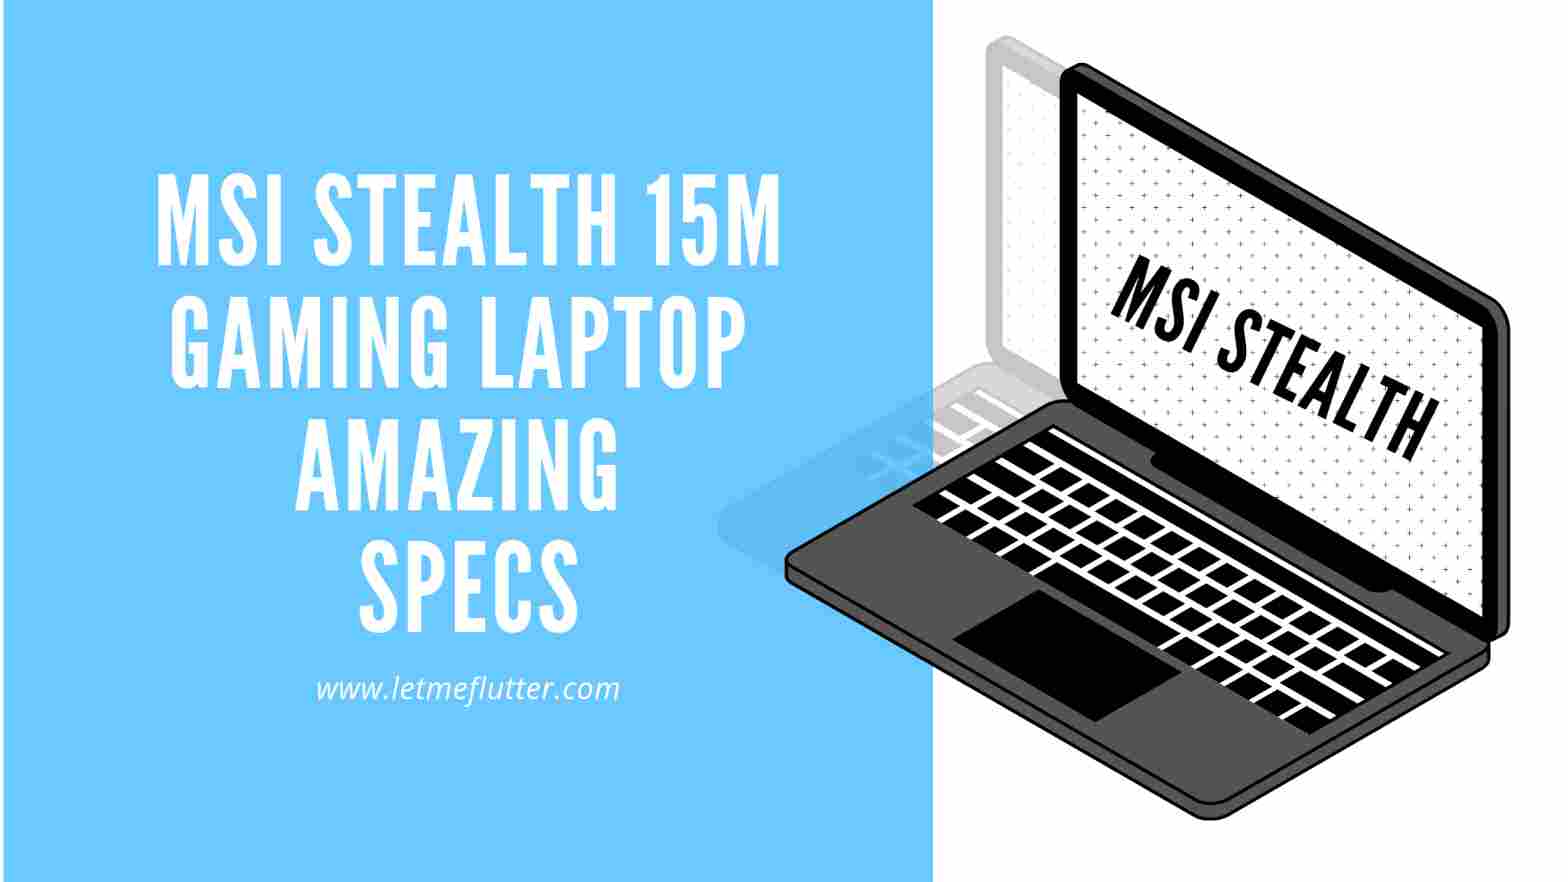 MSI Stealth 15M gaming laptop